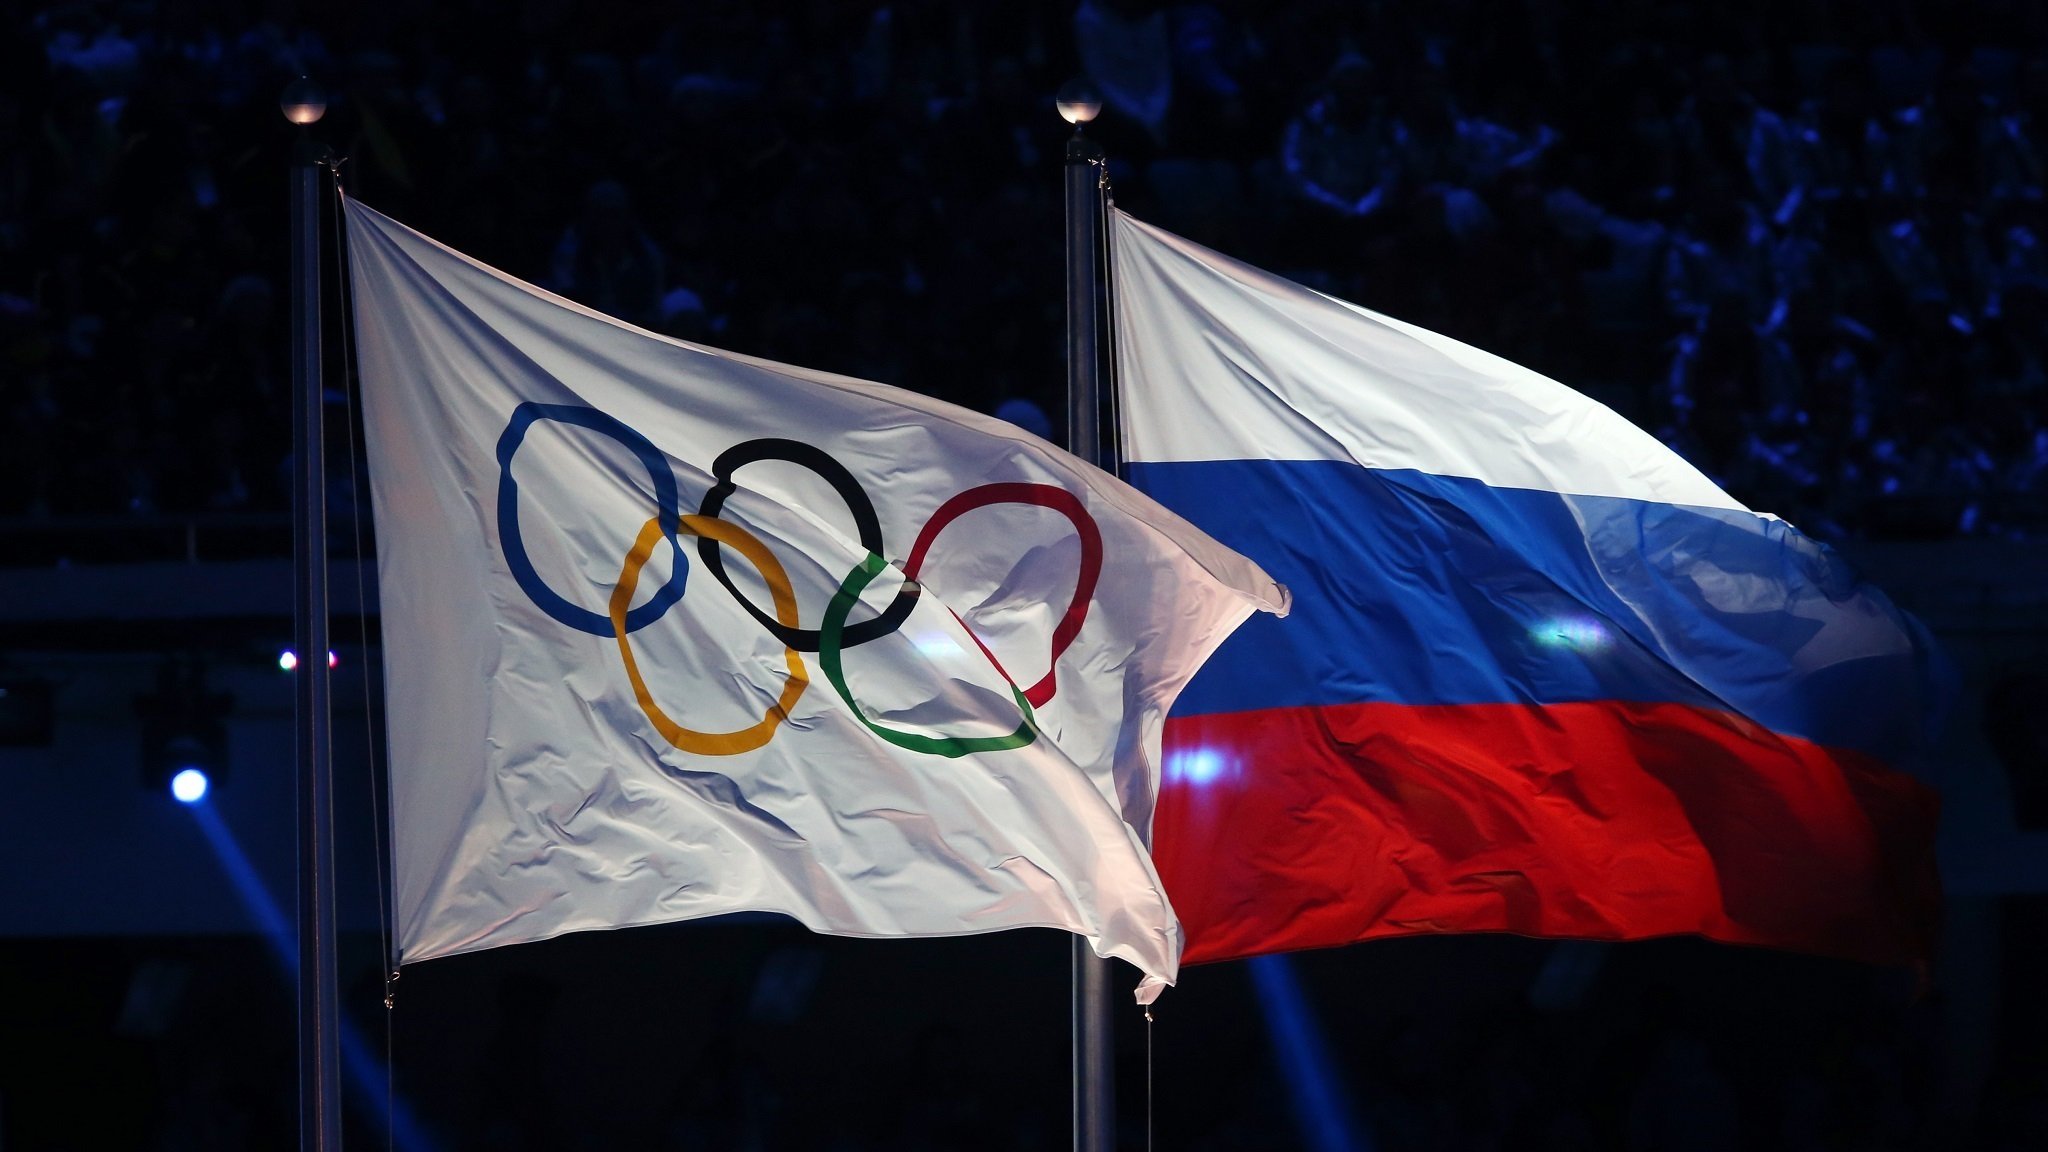 Olympische Flagge neben der russischen Flagge bei der Eröffnung der Spiele in Sotschi 2014